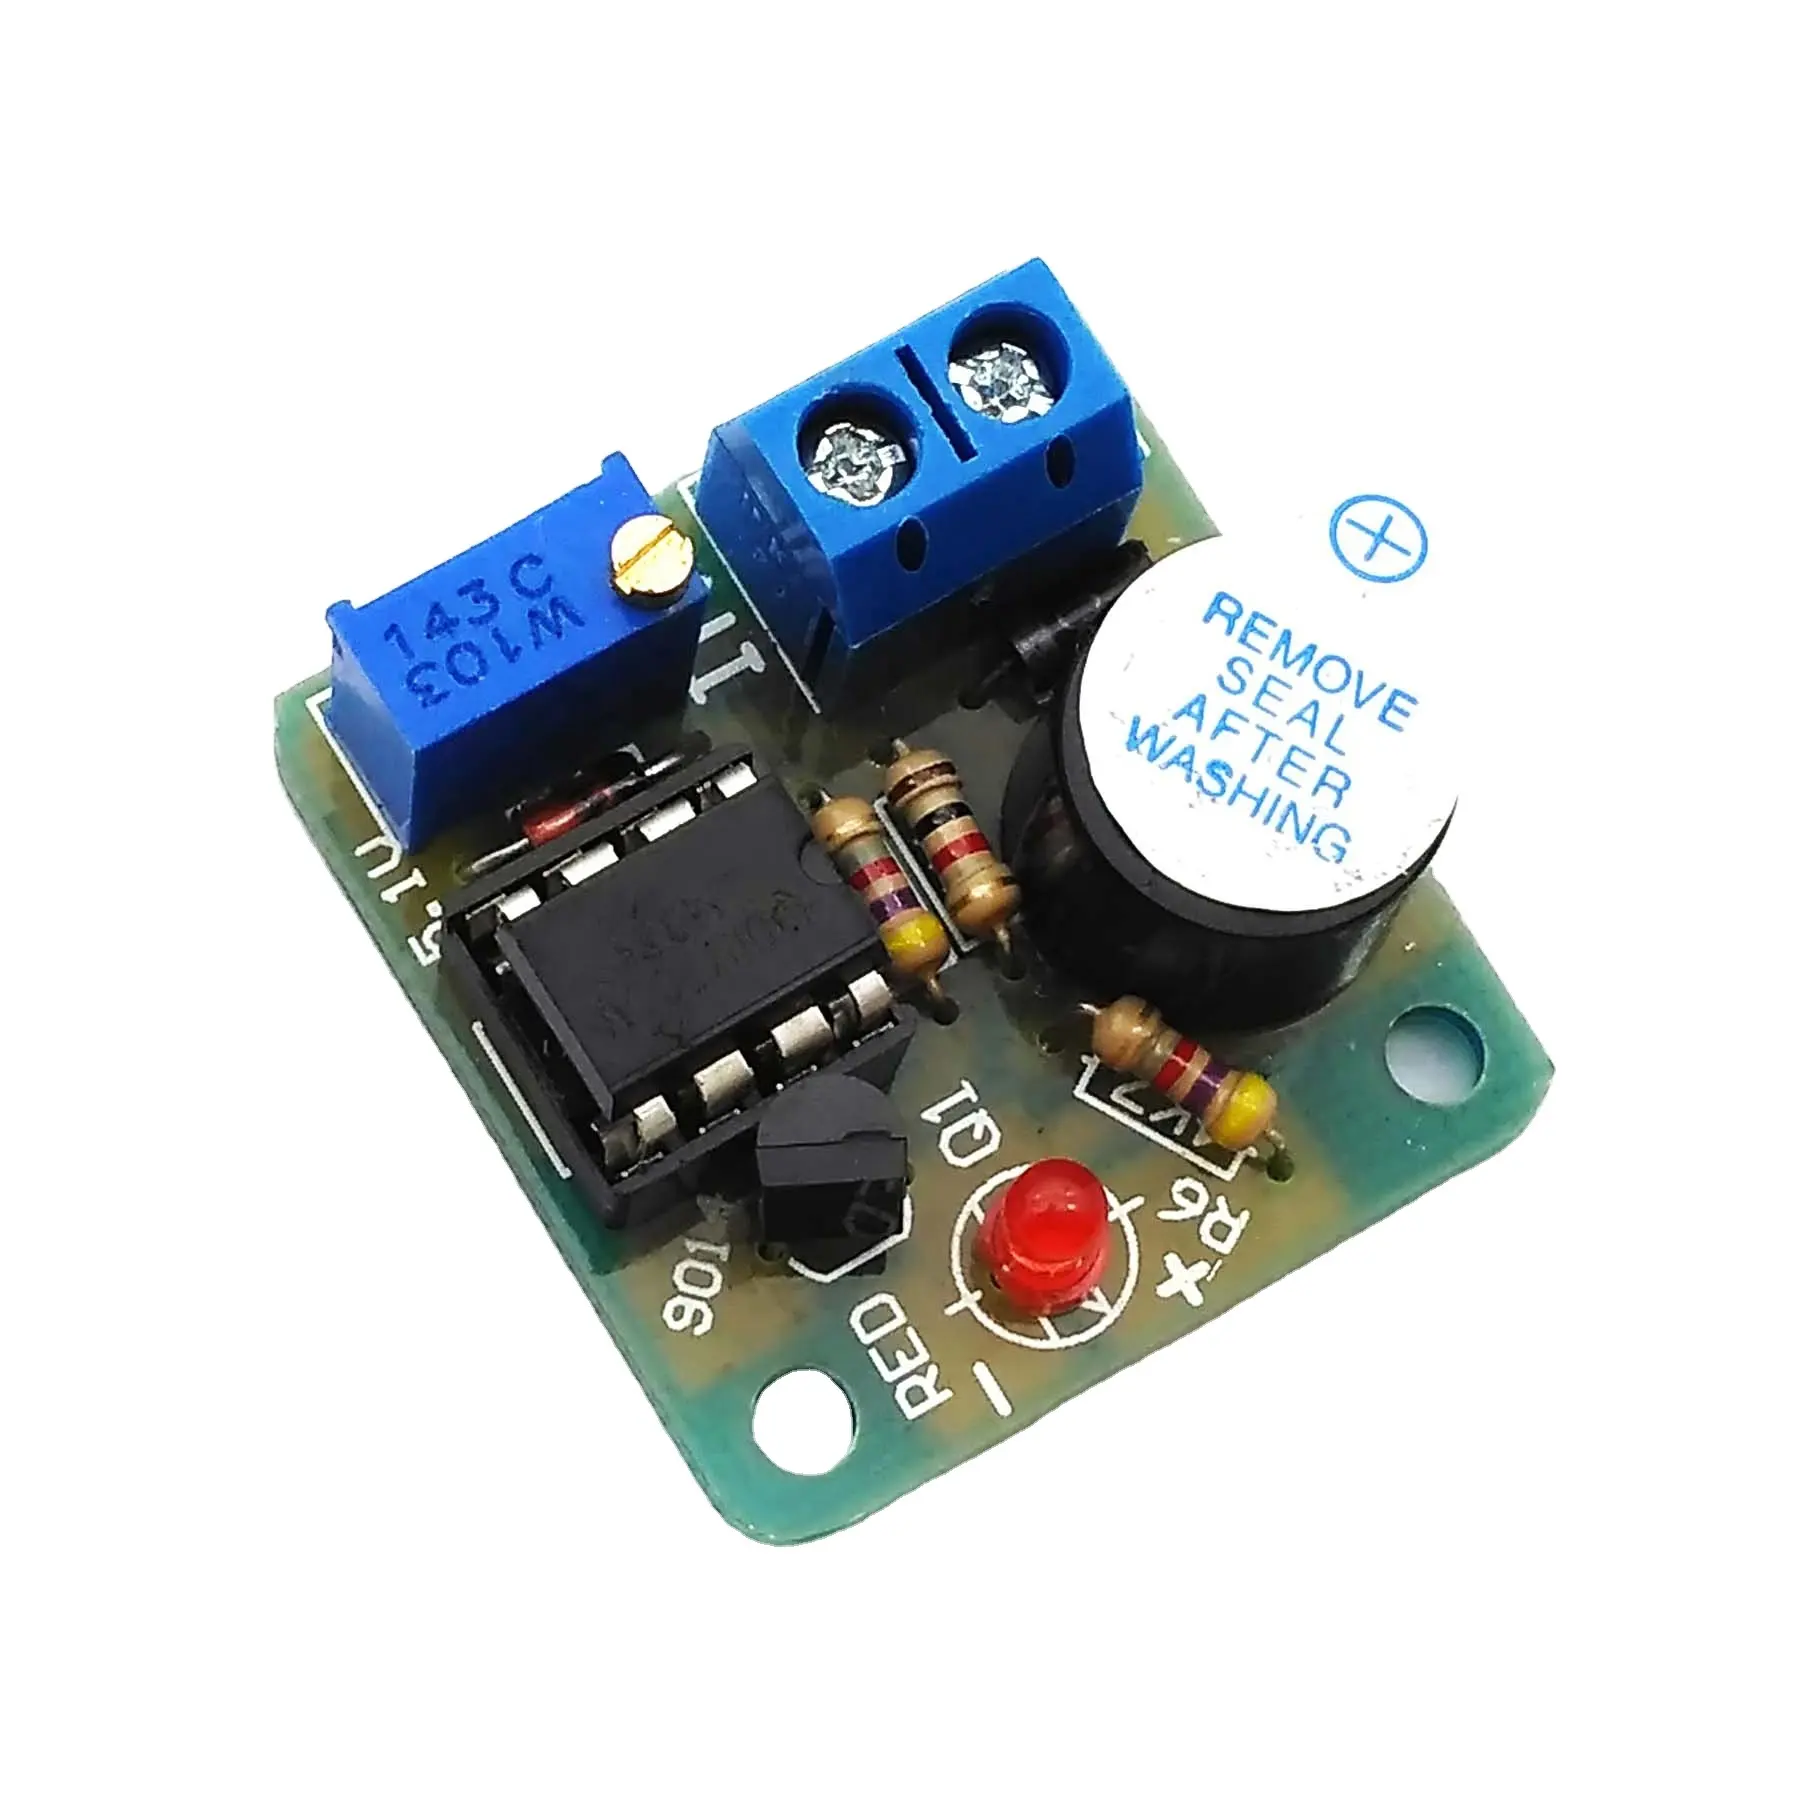 過放電保護ボード、低電圧/低電圧保護モジュールに対する12Vバッテリーの音と光のアラーム